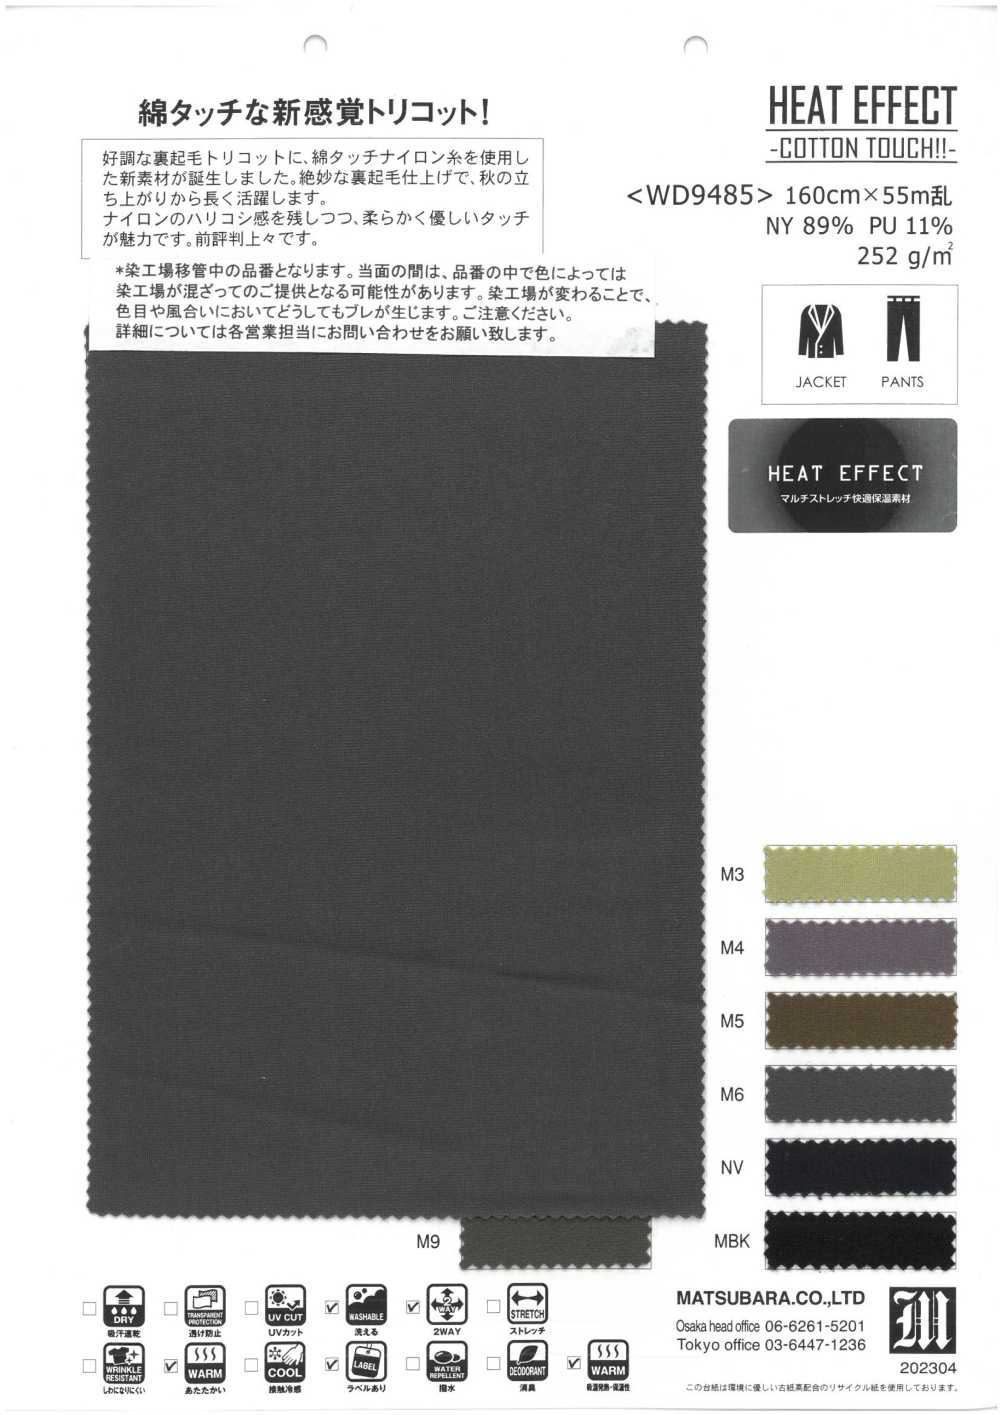 WD9485 EFFET CHALEUR -TOUCHE COTON!!-[Fabrication De Textile] Matsubara